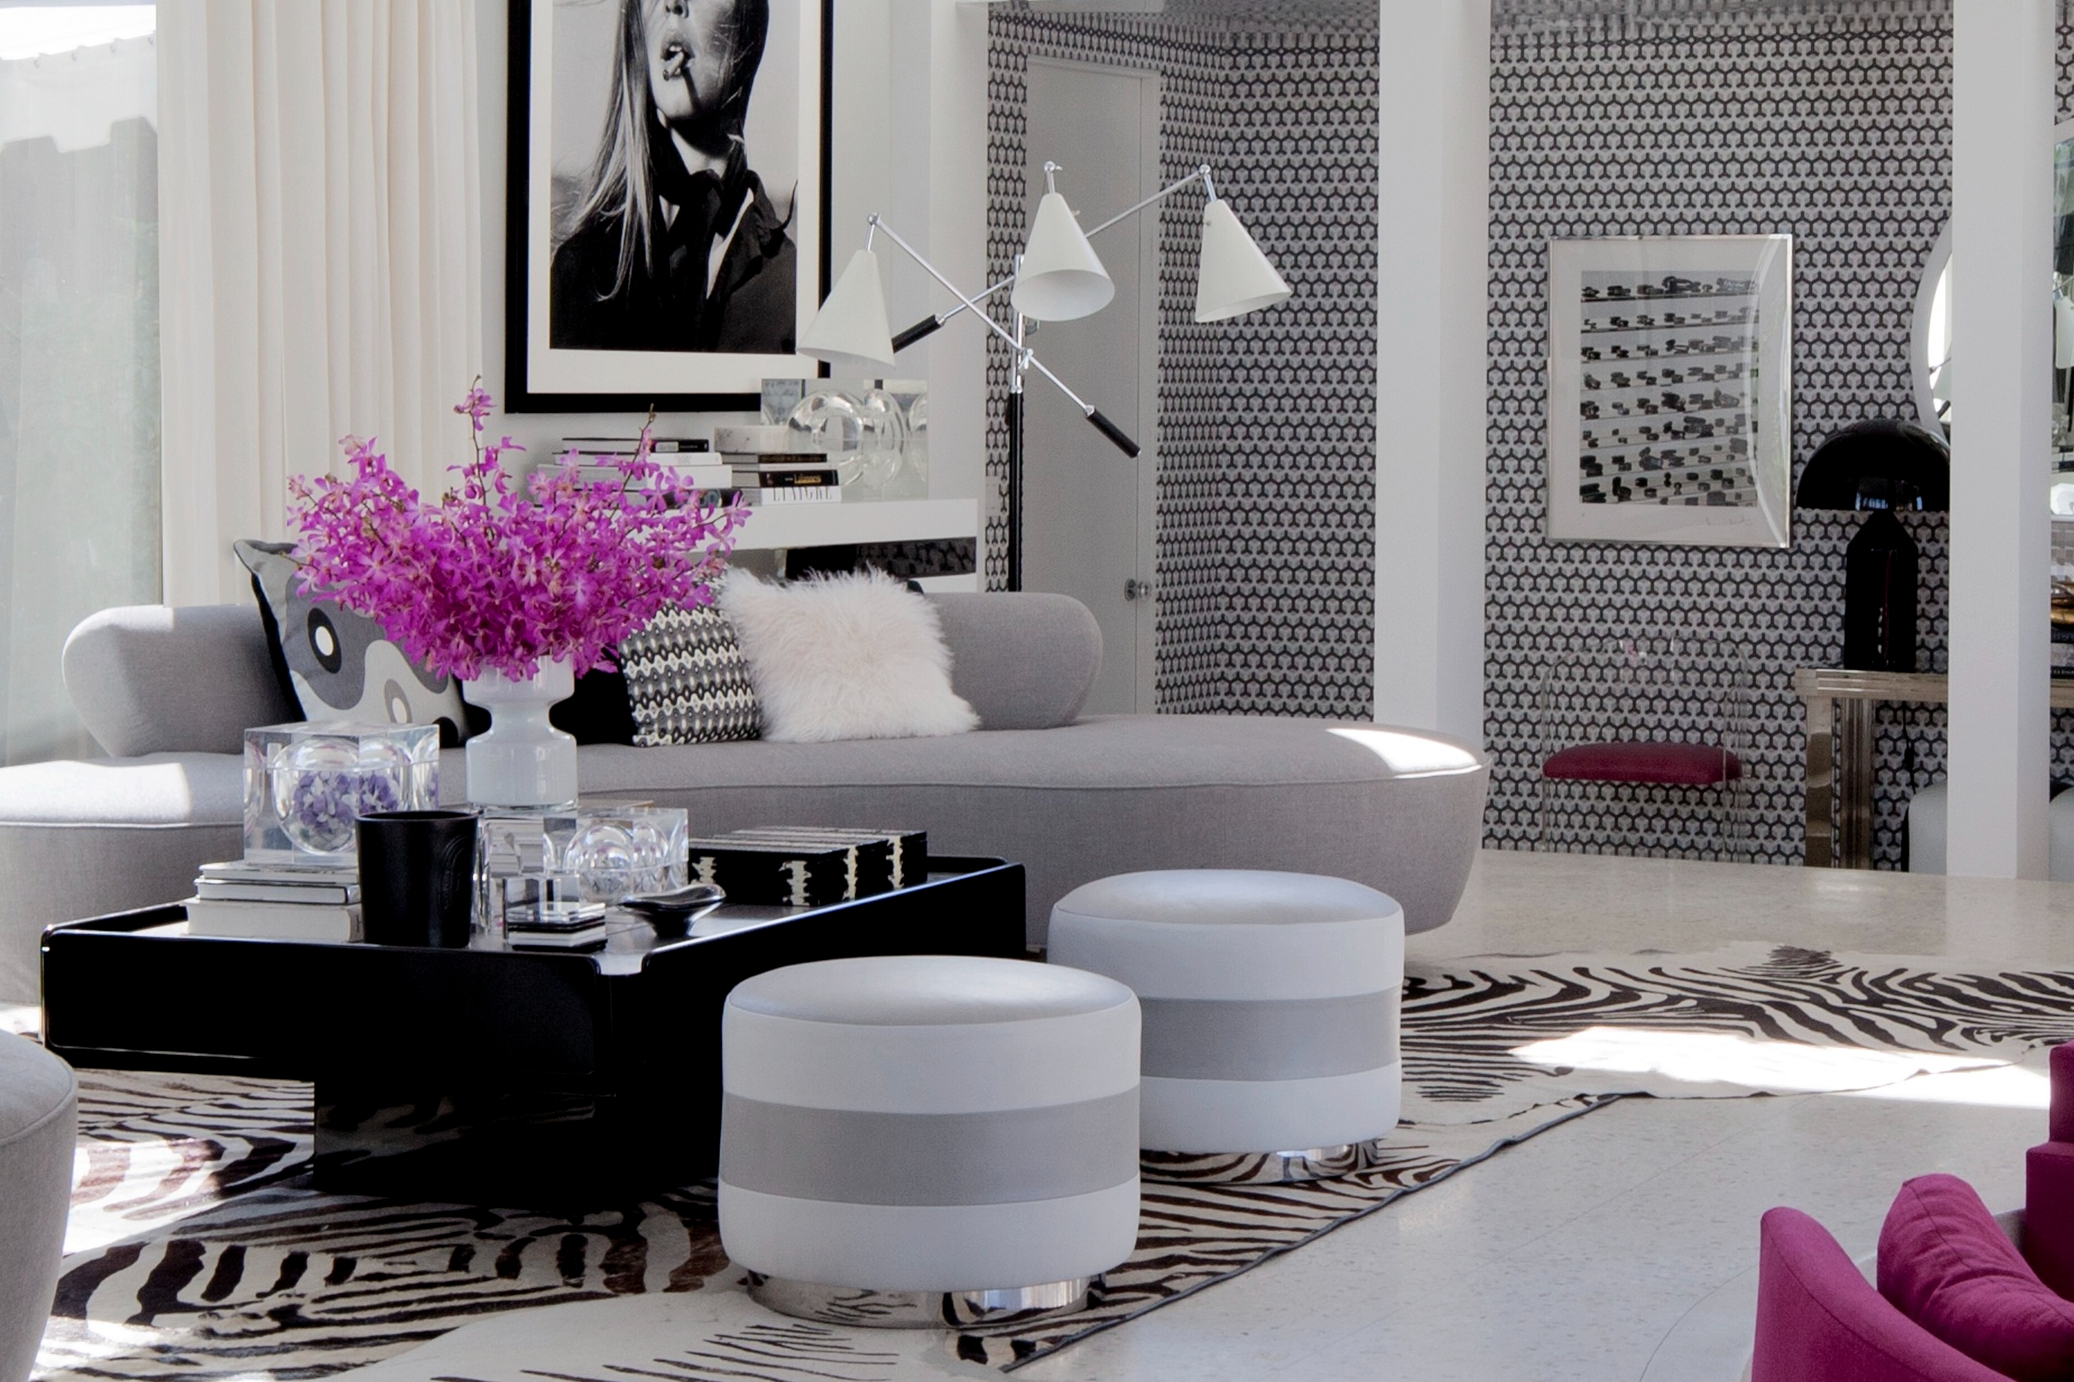 斑馬皮和鮮明對比黑白掛畫及幾何圖案壁紙，搭配灰色沙發、 亮麗色彩家具家飾，讓空間宛如一件普普藝術作品。